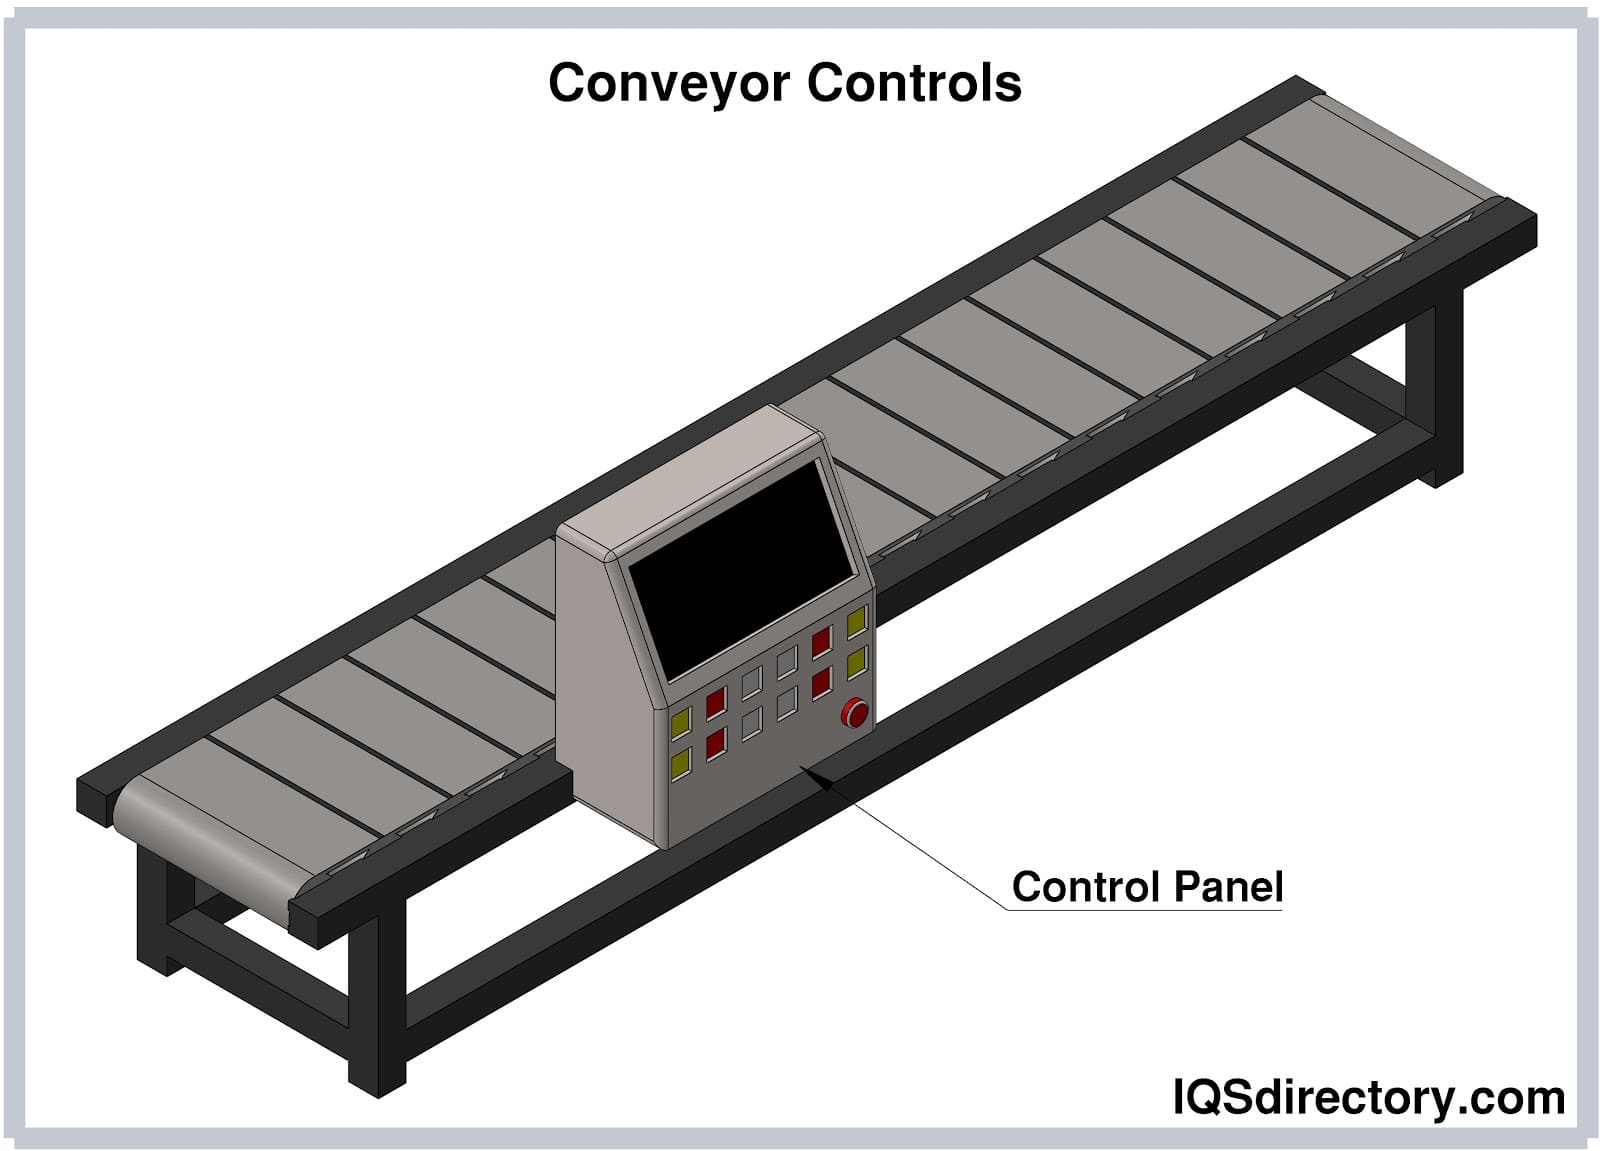 Conveyor Controls